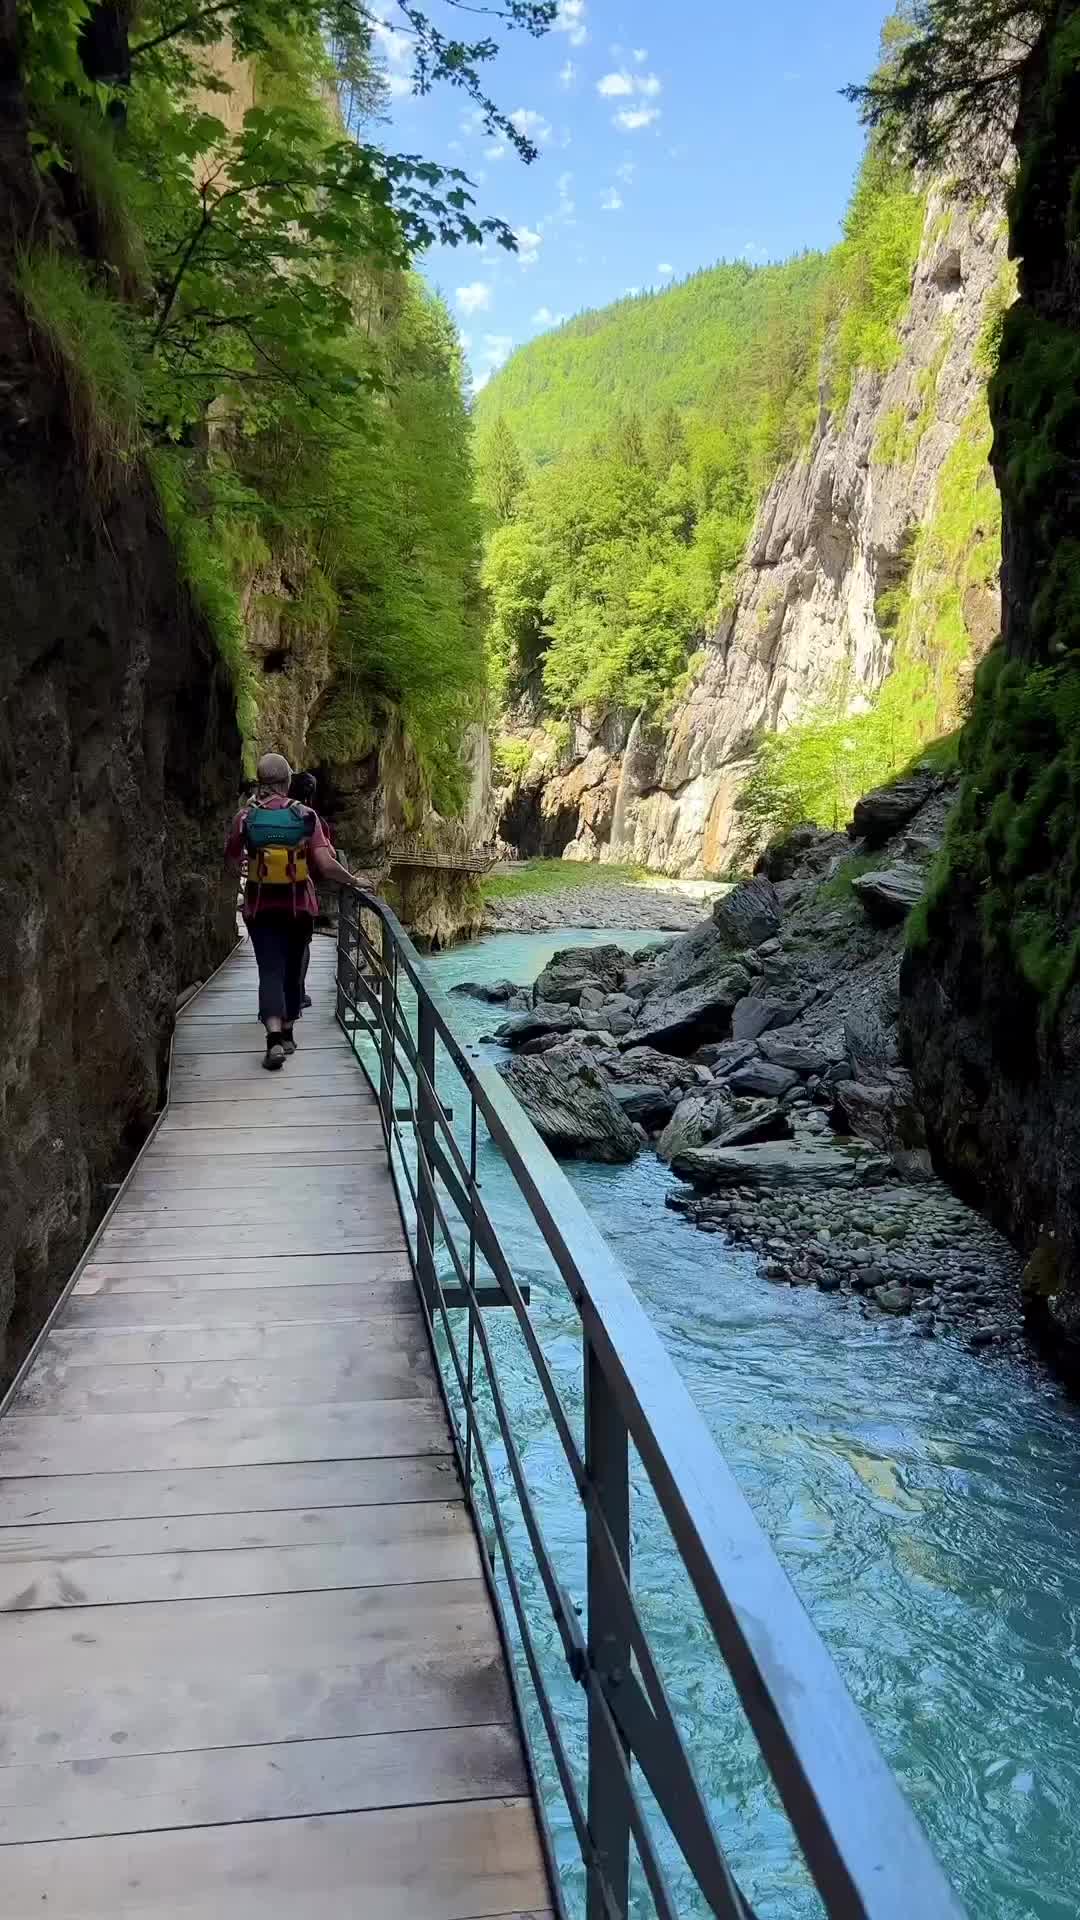 Explore Aareschlucht: Switzerland's Scenic River Gorge